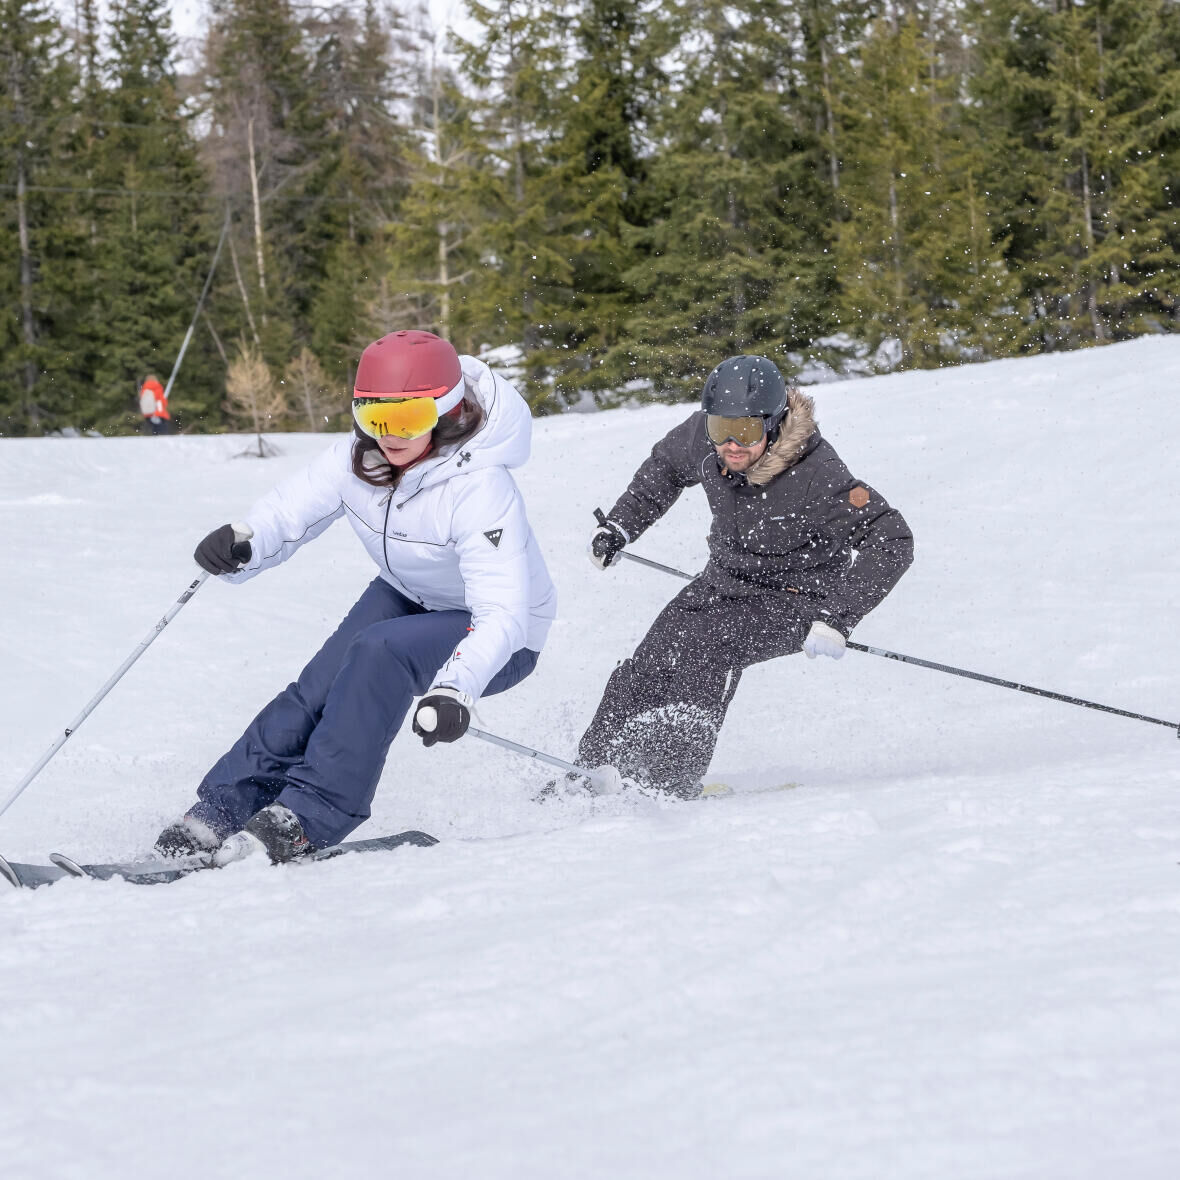 Os benefícios do ski, um desporto para descobrir graças aos conselhos da Decathlon